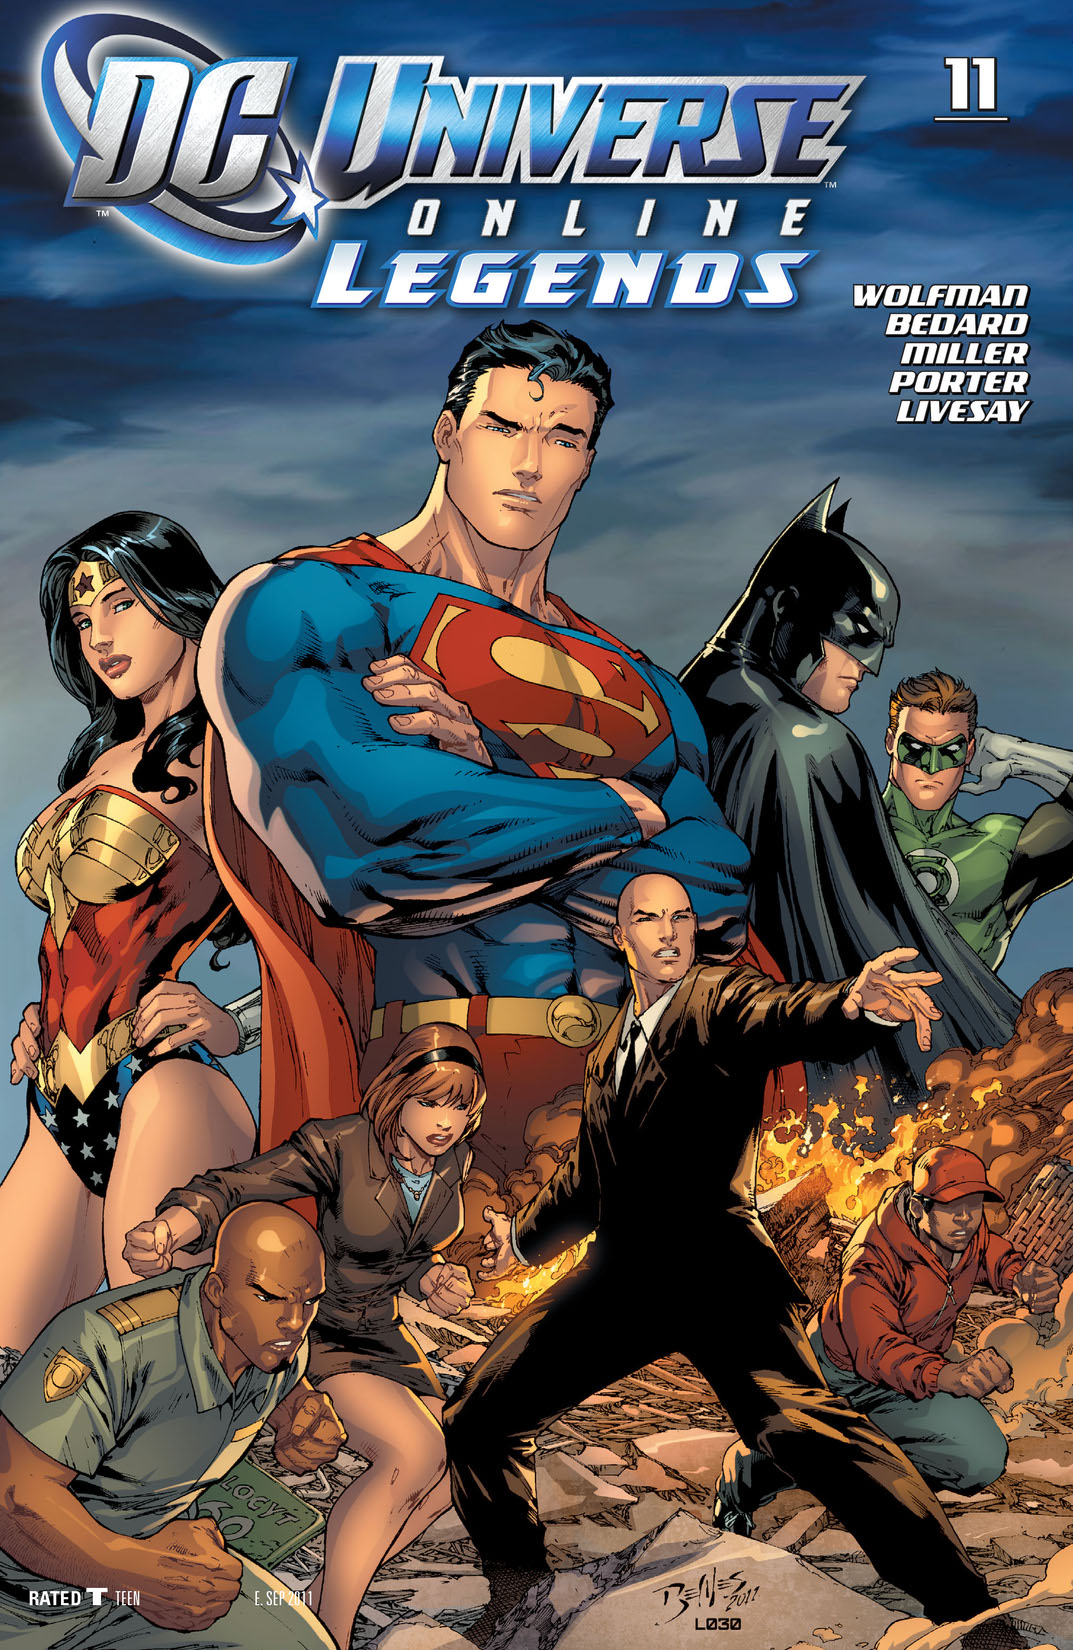 DC Universe Online Legends #11 preview images